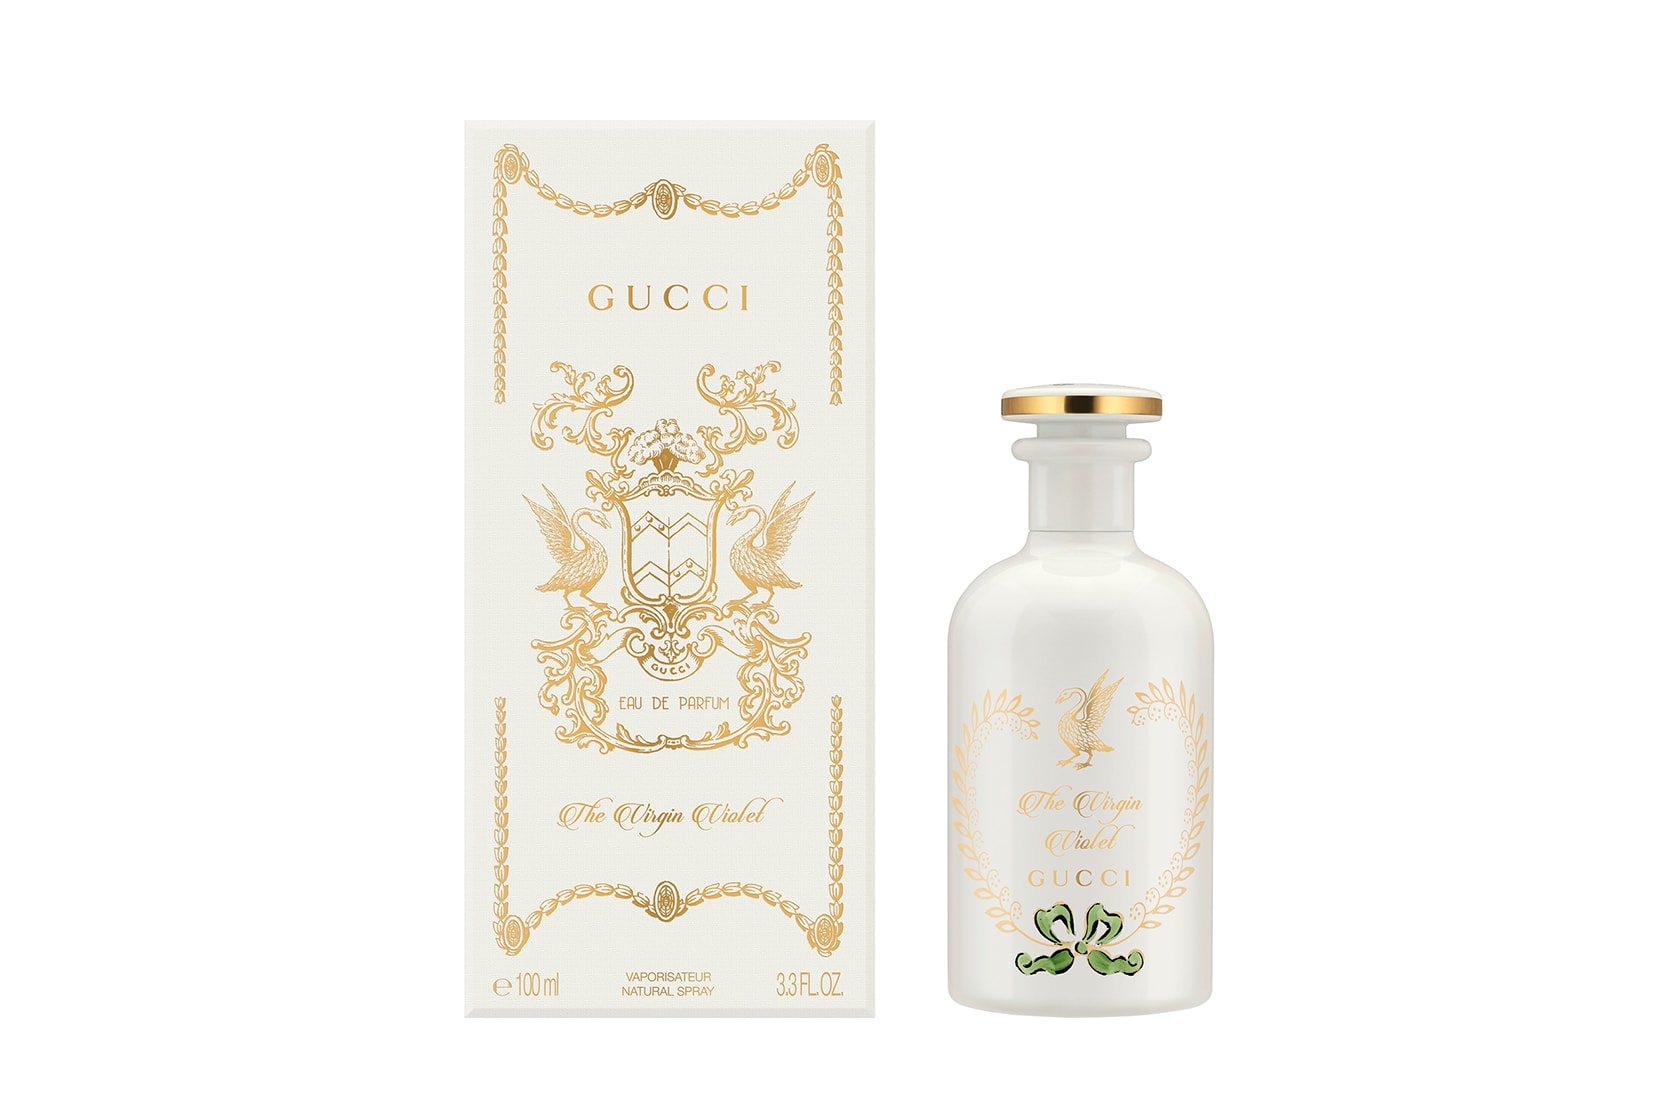 Gucci Beauty The Alchemist's Garden Perfume Fragrance Parfum